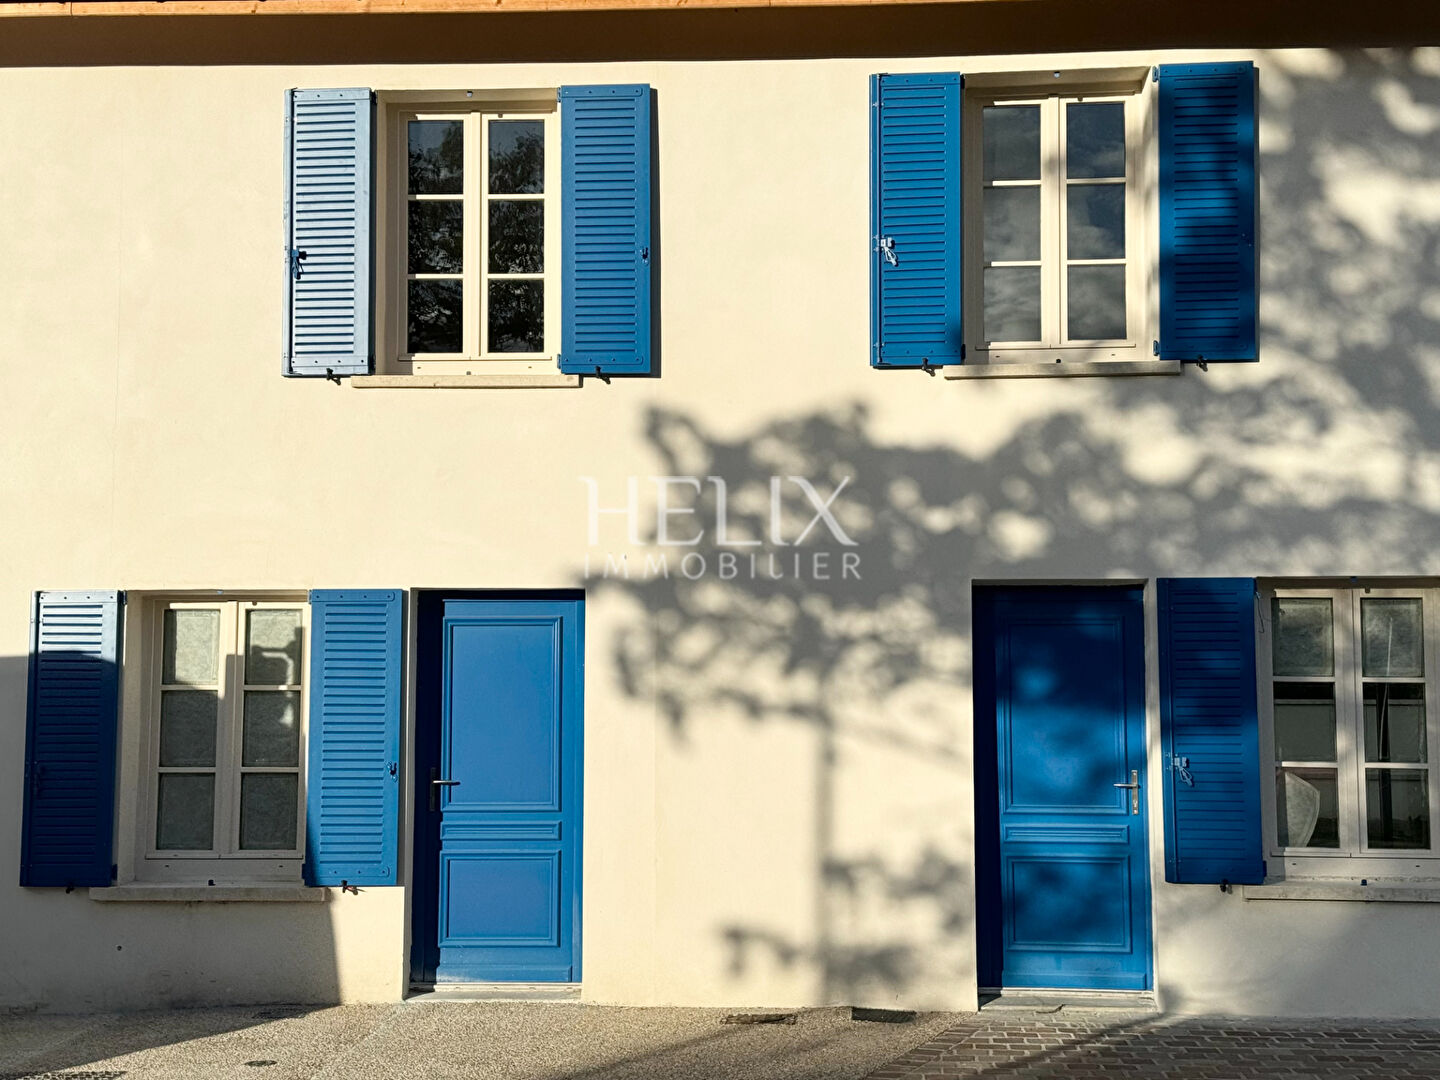 A vendre maison 6 pièces 150 M², un projet personnalisé à Saint-Nom-La- Bretèche